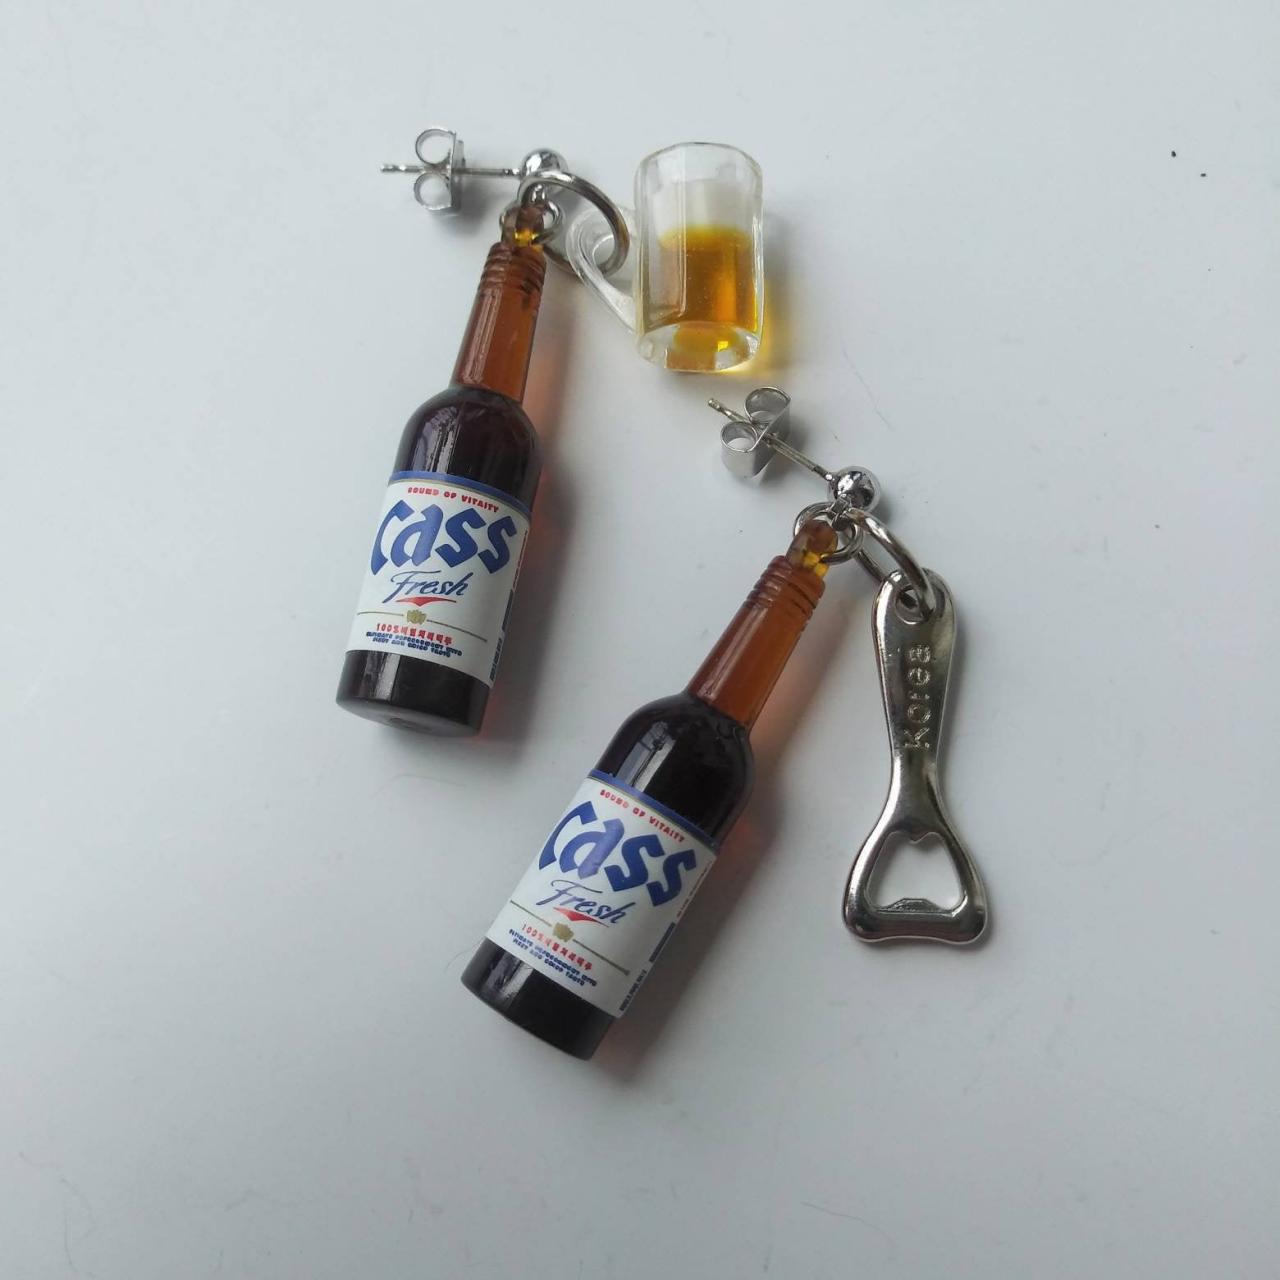 Korean Beer 'cass' Bottle With Beer Mug, Bottle Opener Earrings, Drink Bottle Earrings